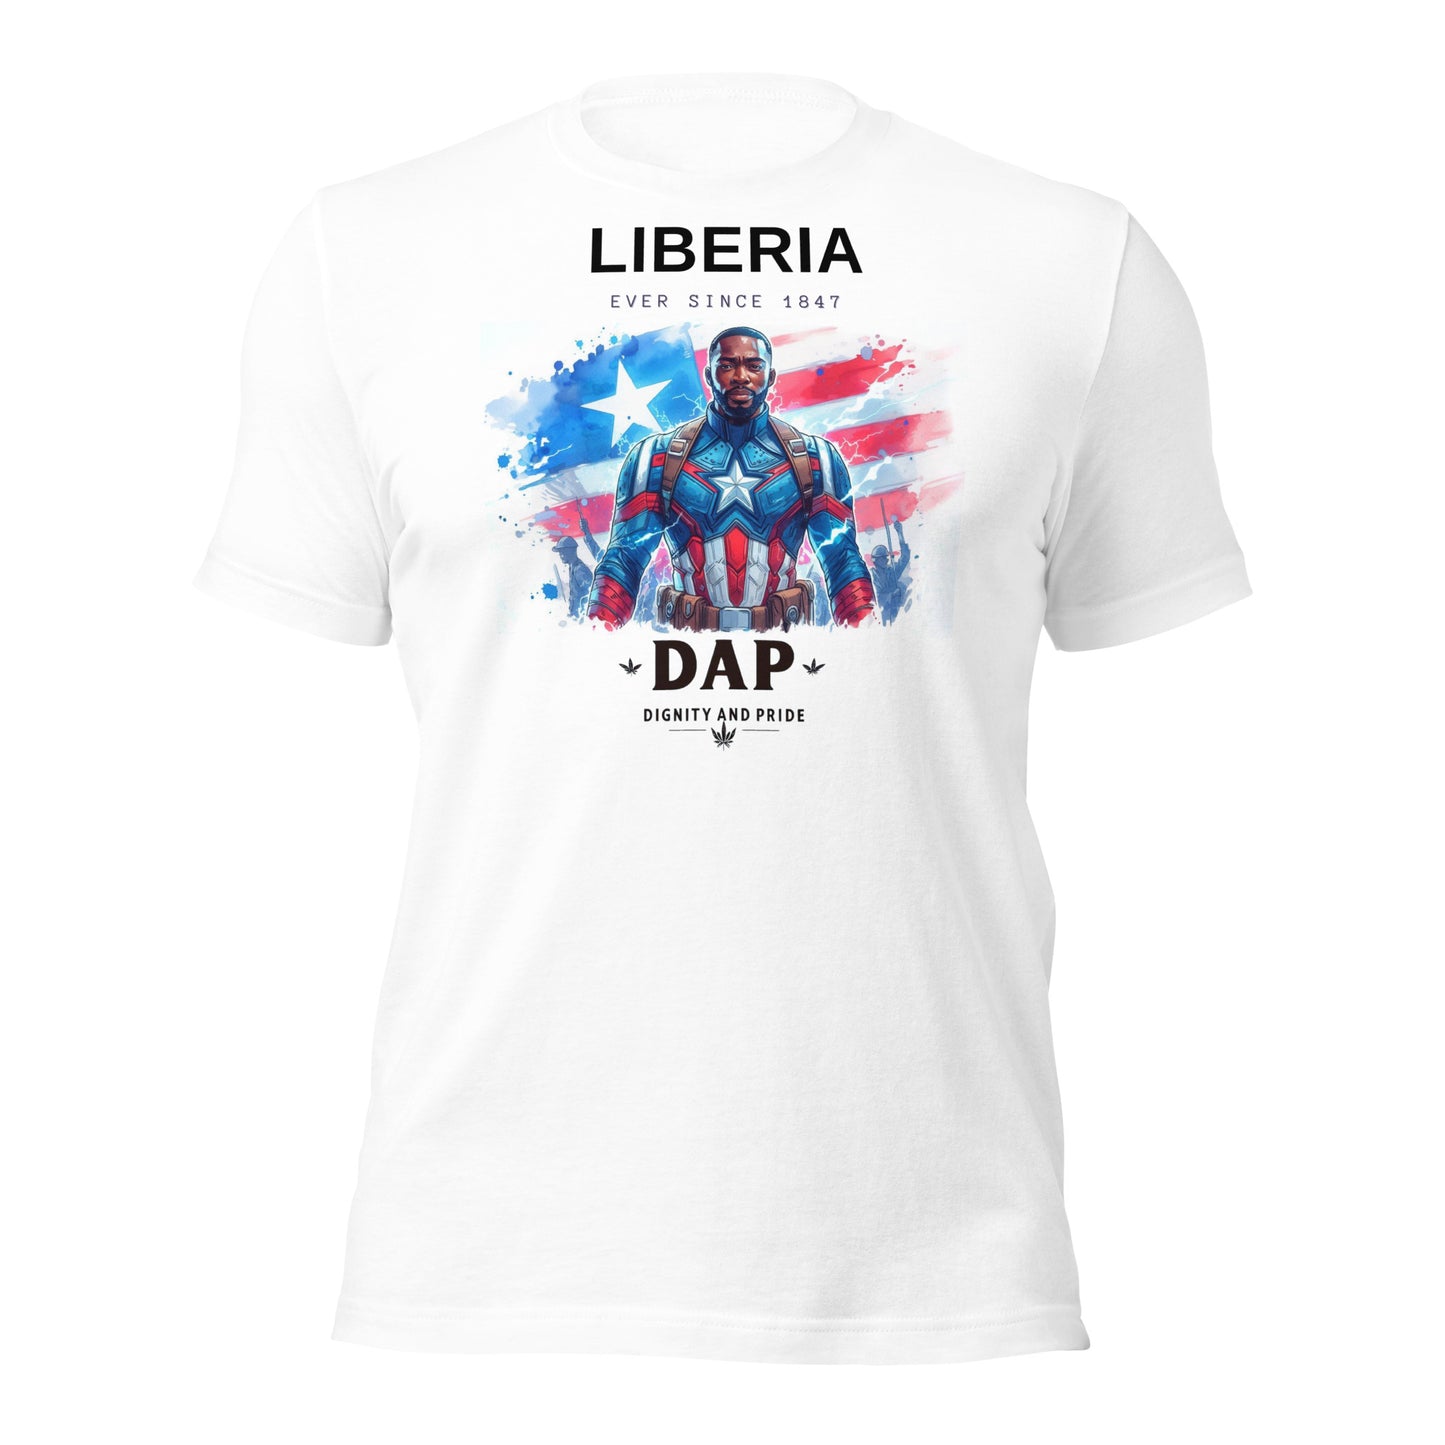 Liberia DAP t-shirt - Another Bodega